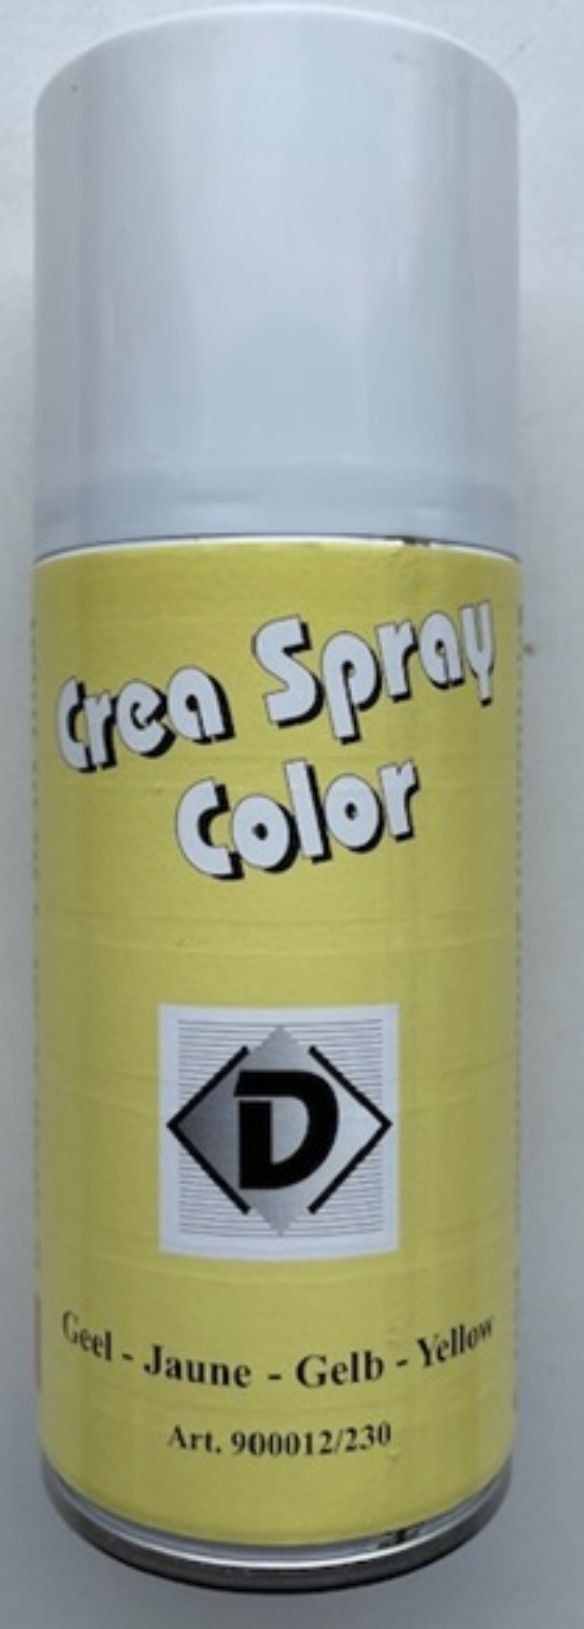 OUTLET Crea spray color, 150 ml, geel kopen?